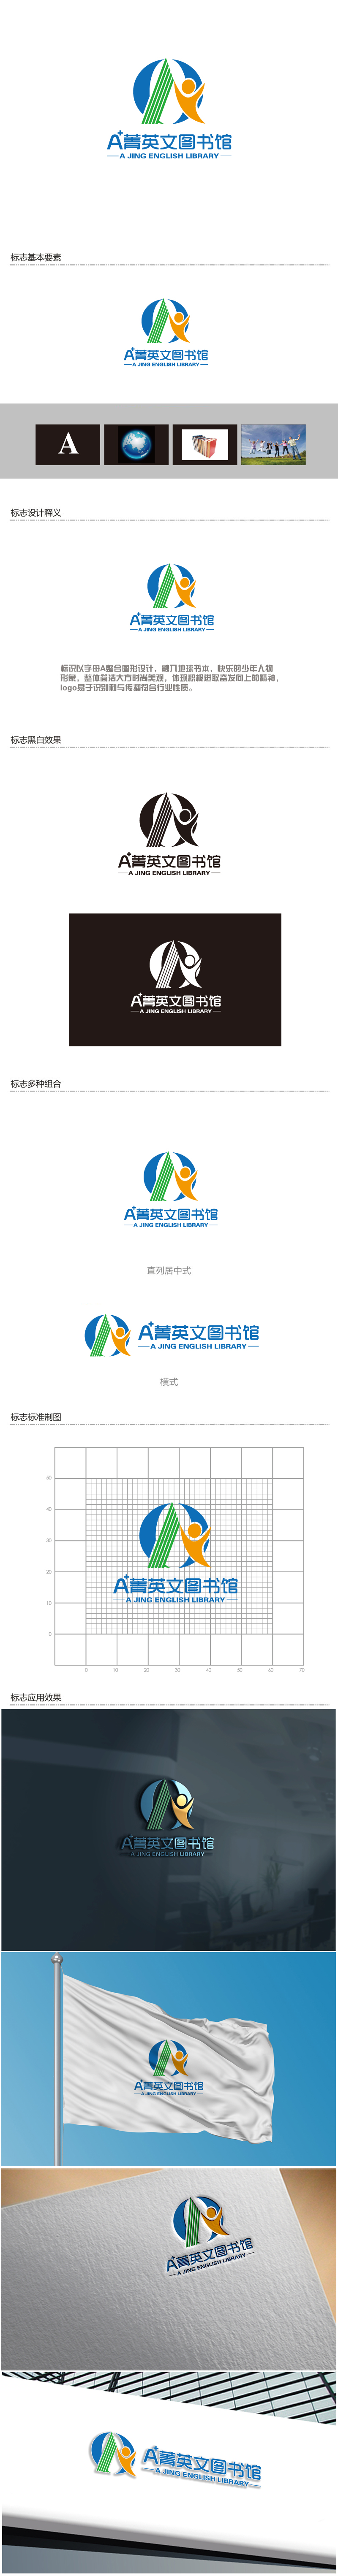 陈智江的A菁英文图书馆logo设计